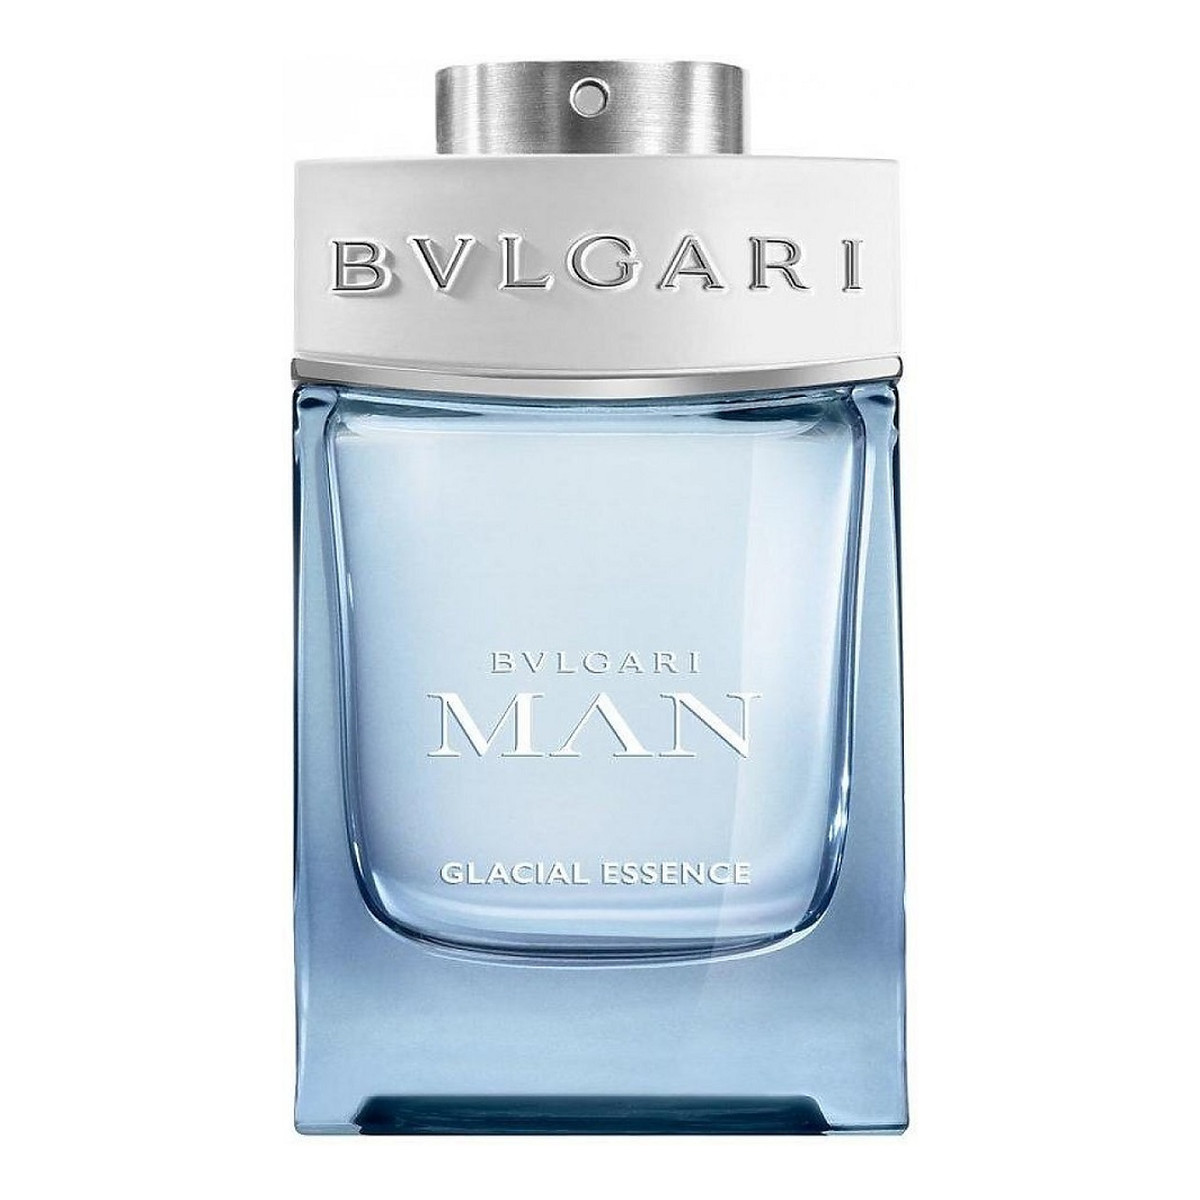 Bvlgari Man Glacial Essence Woda perfumowana spray 60ml